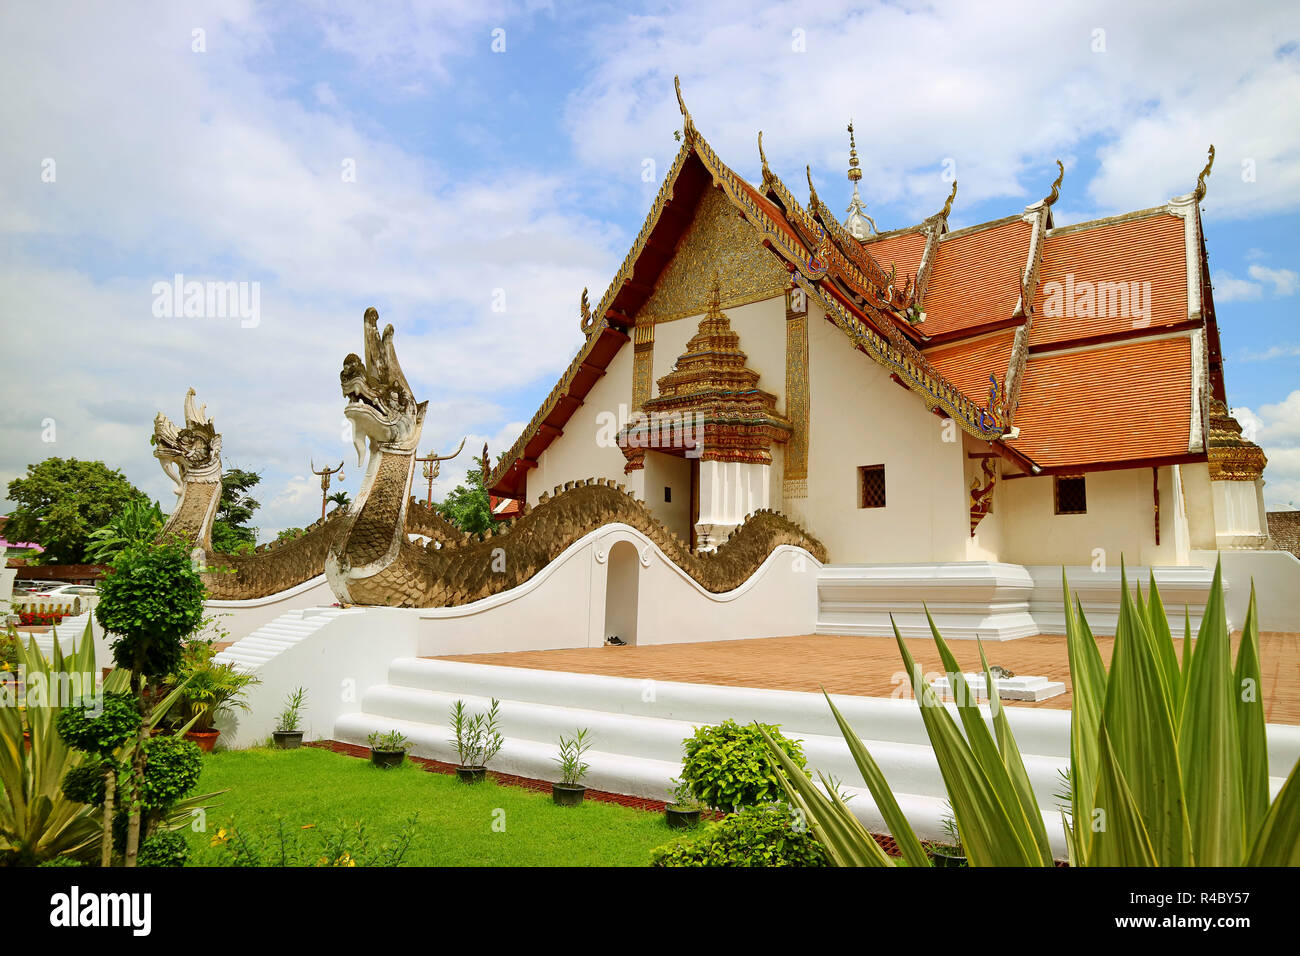 Wat Phumin tempio, che l'edificio principale Combina Ubosot e Wiharn (adorare Hall e ordinazione Hall), storico tempio buddista in Nan, Thailandia Foto Stock